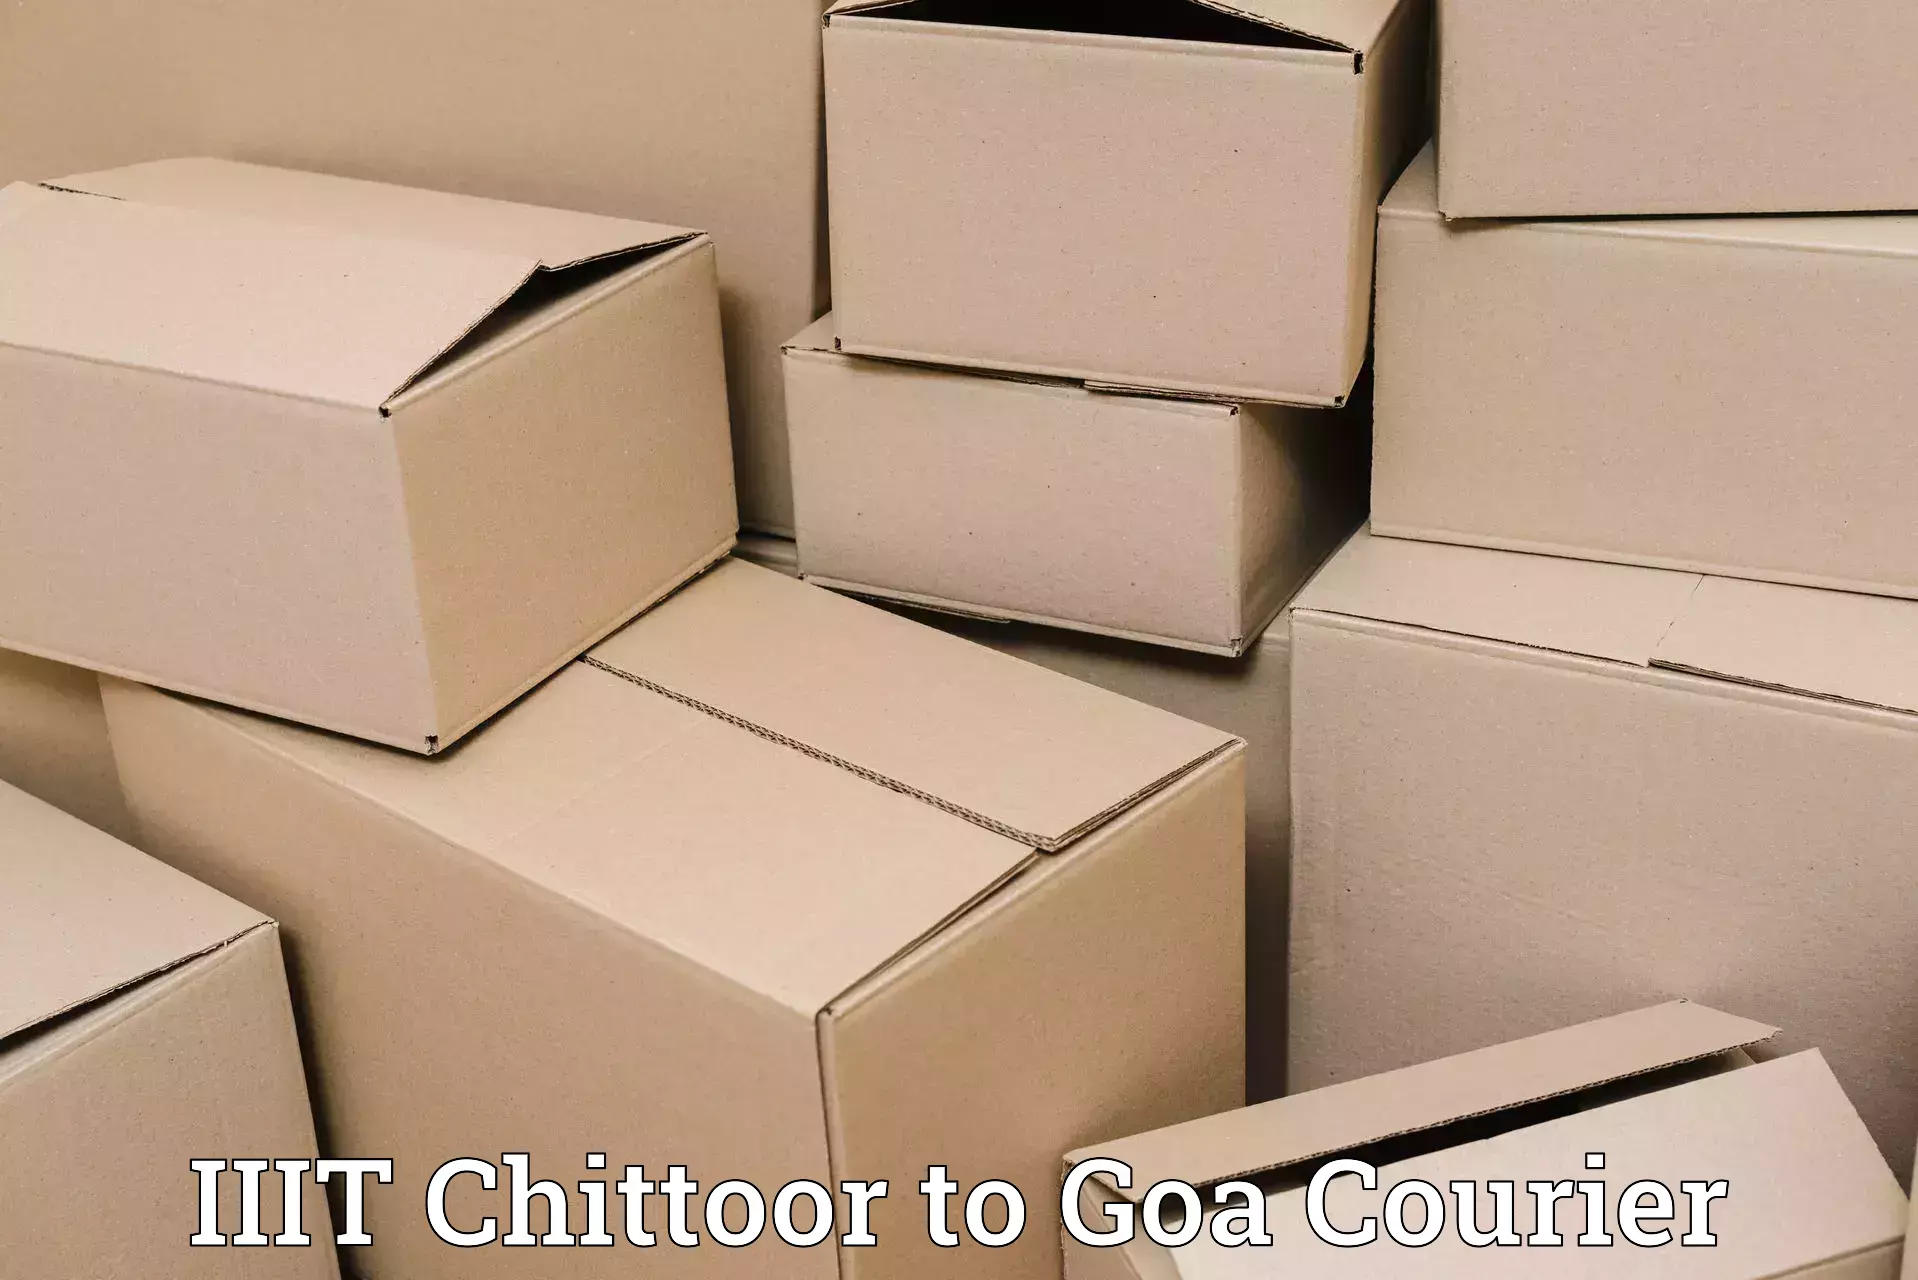 Corporate courier solutions IIIT Chittoor to IIT Goa